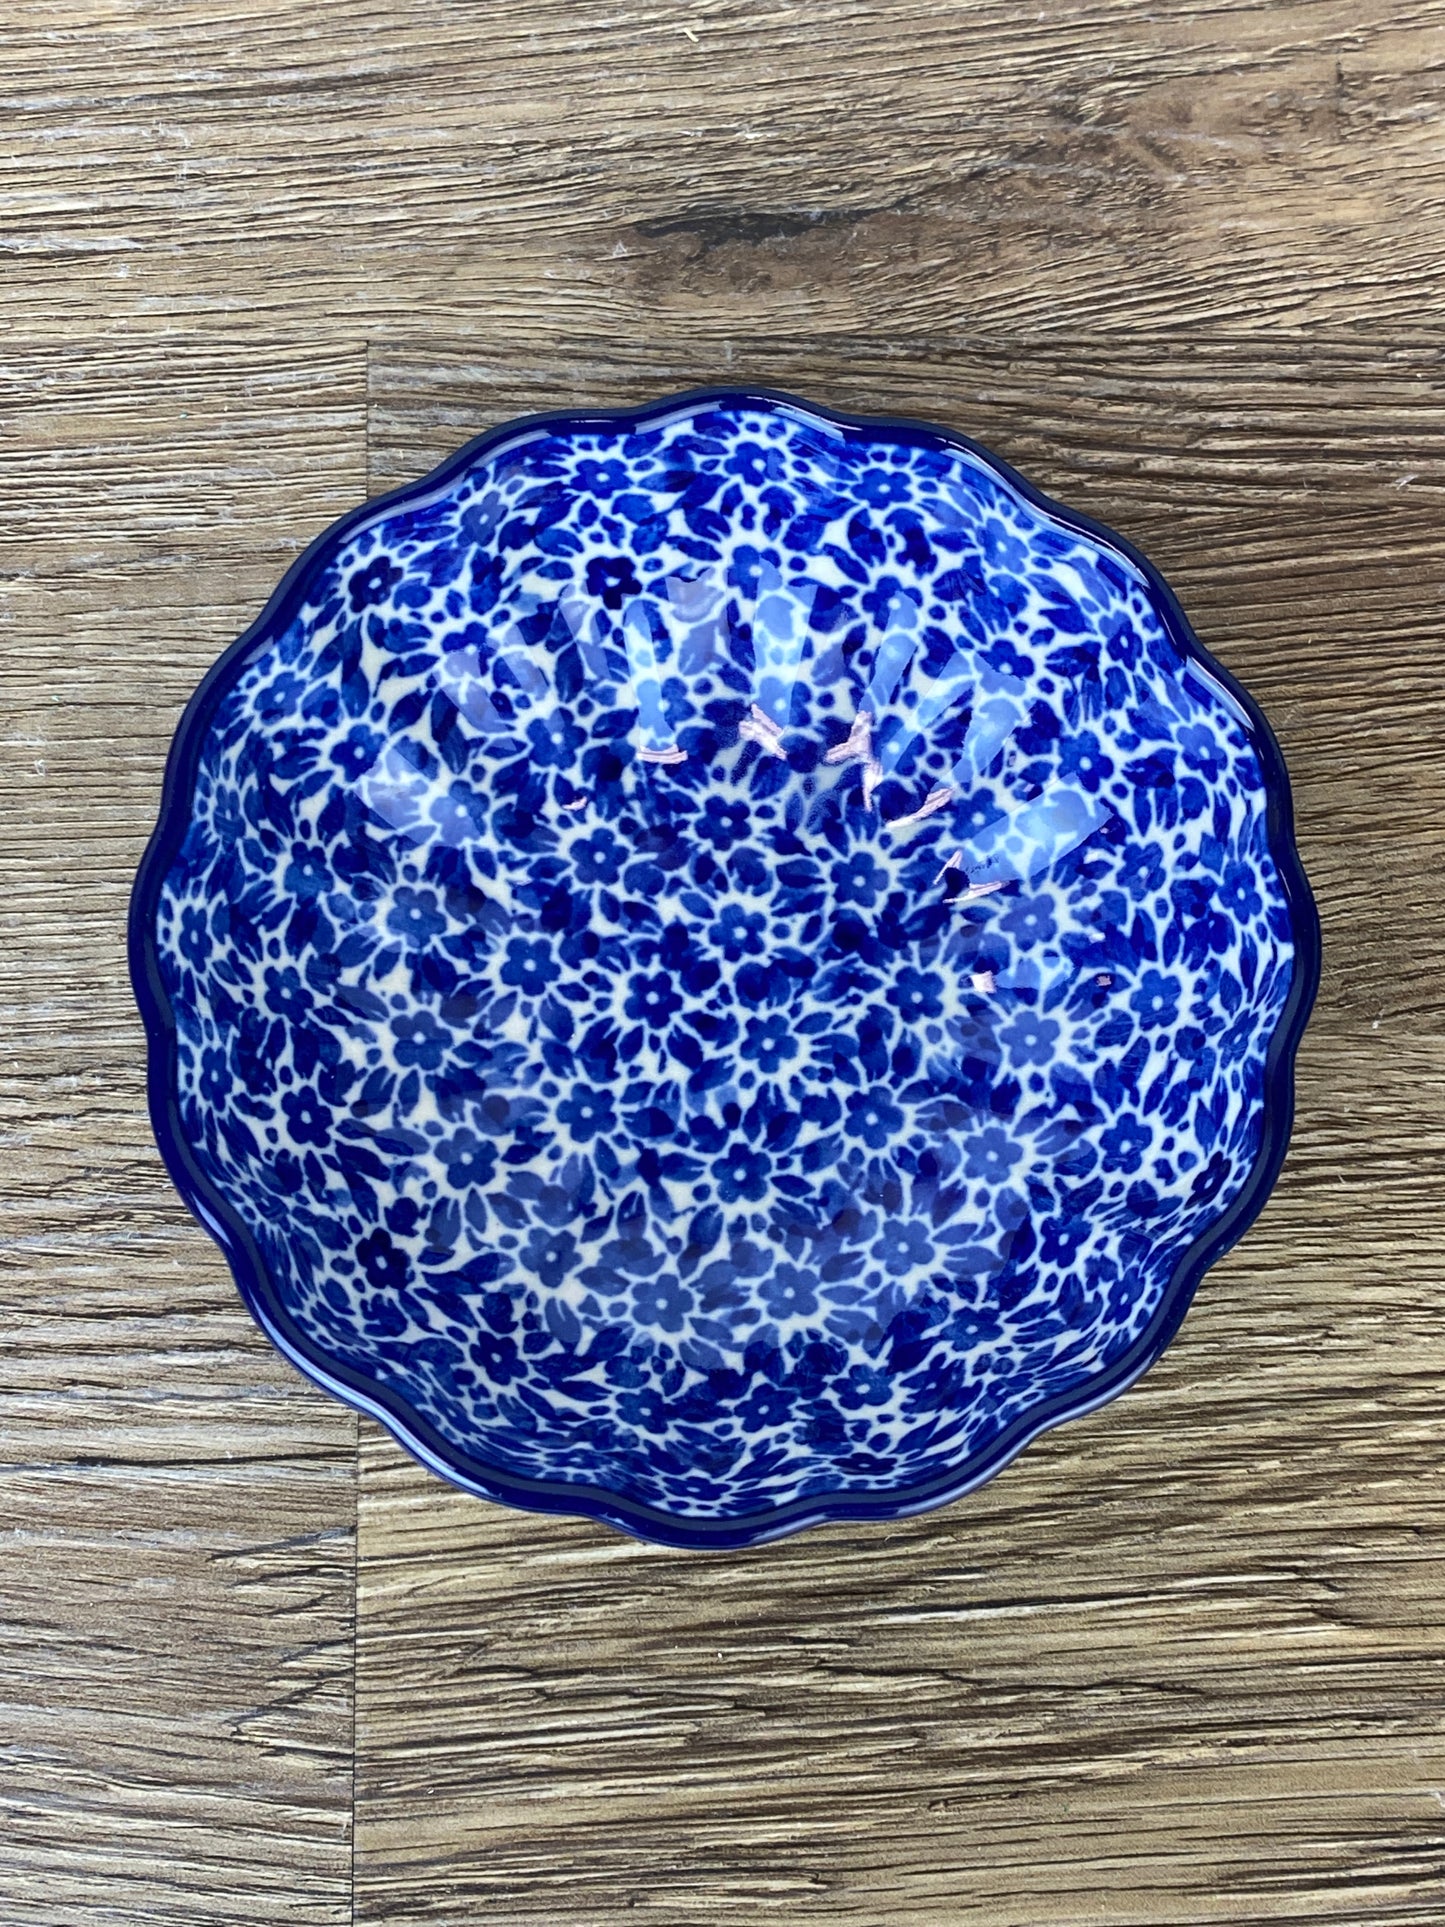 4.5" Scalloped Bowl - Shape 23 - Pattern 2396